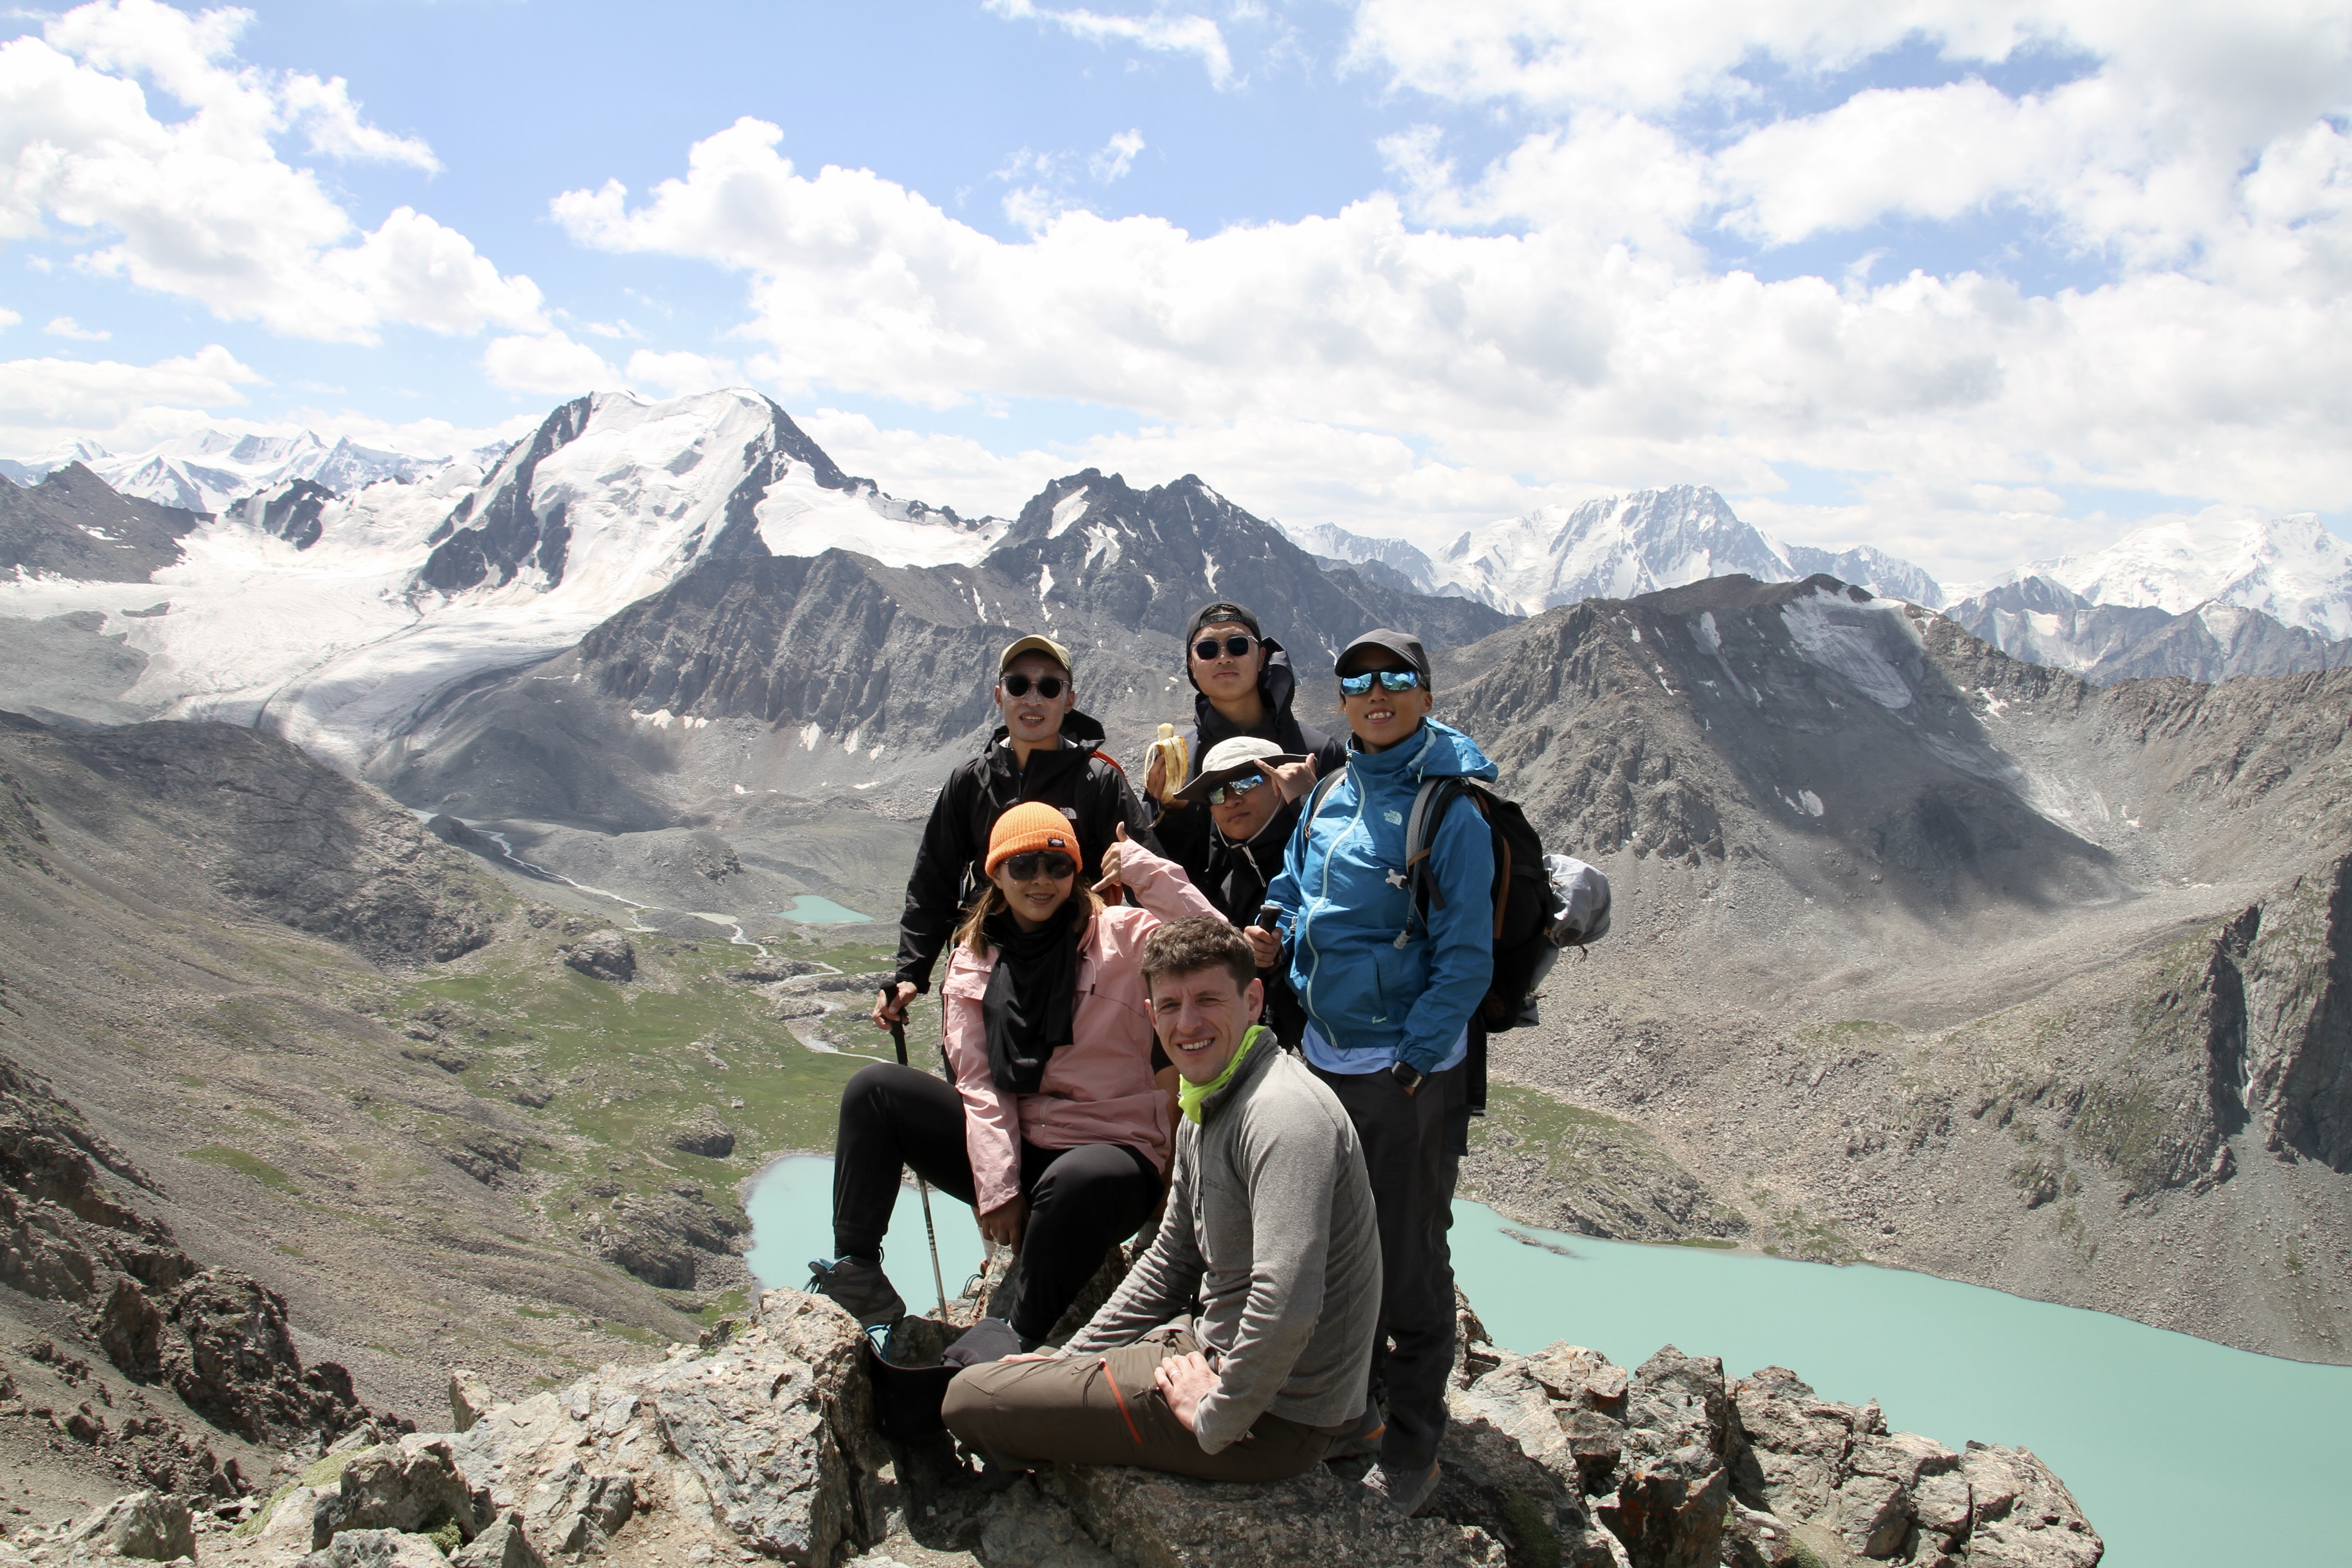 喜馬拉雅山-吉爾吉斯坦探險之旅